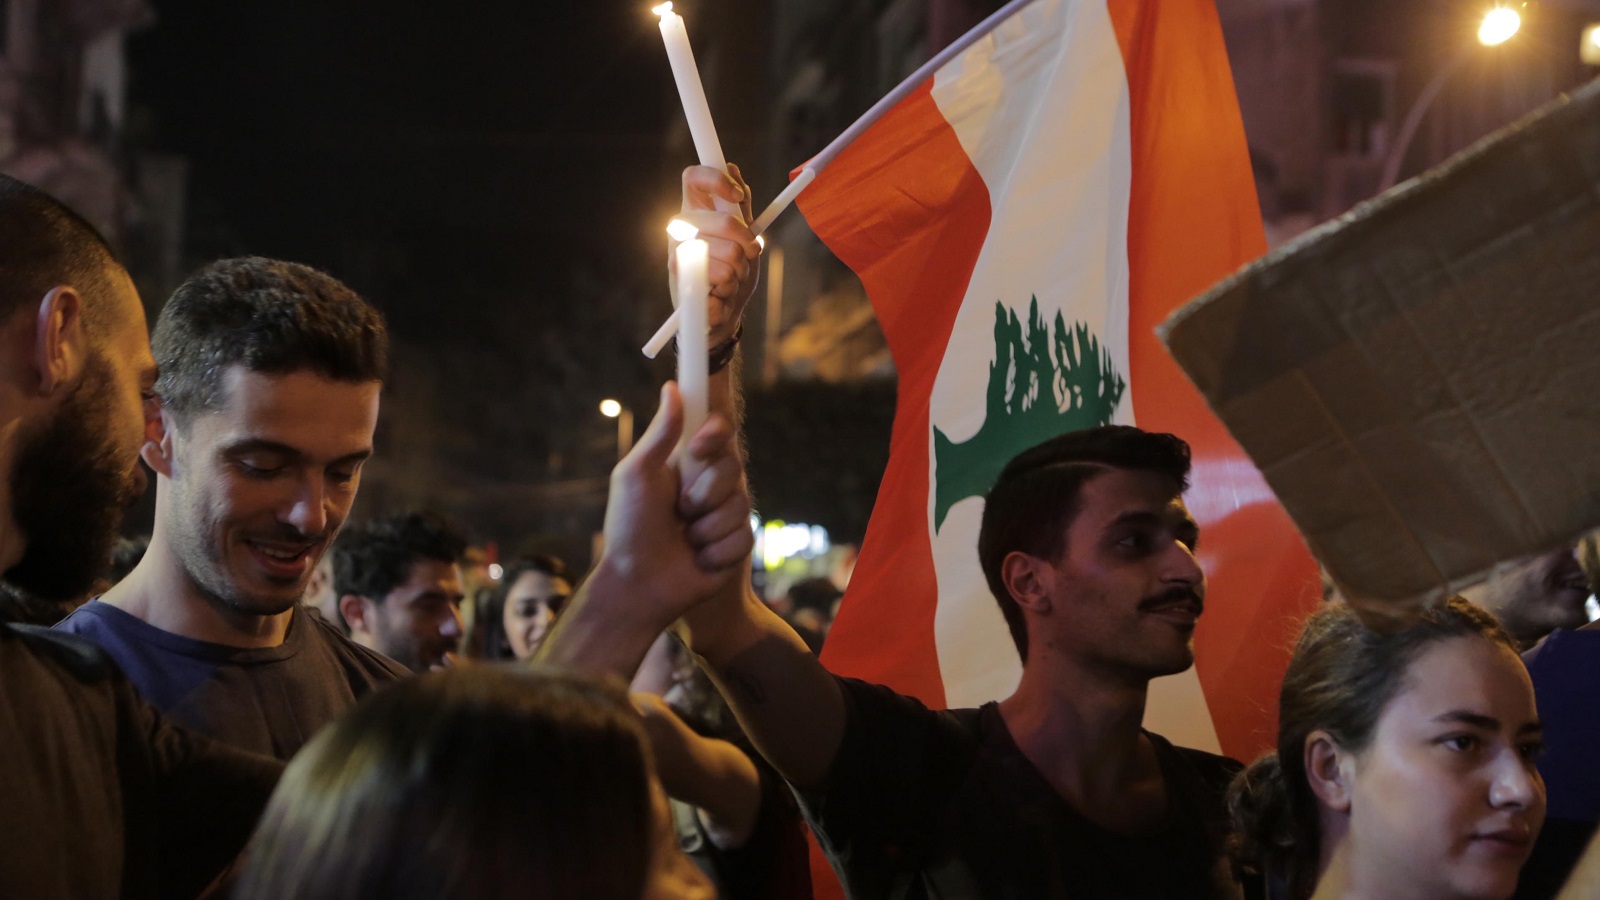 السلطة تستنجد بفرنسا وتهدد اللبنانيين بالفوضى